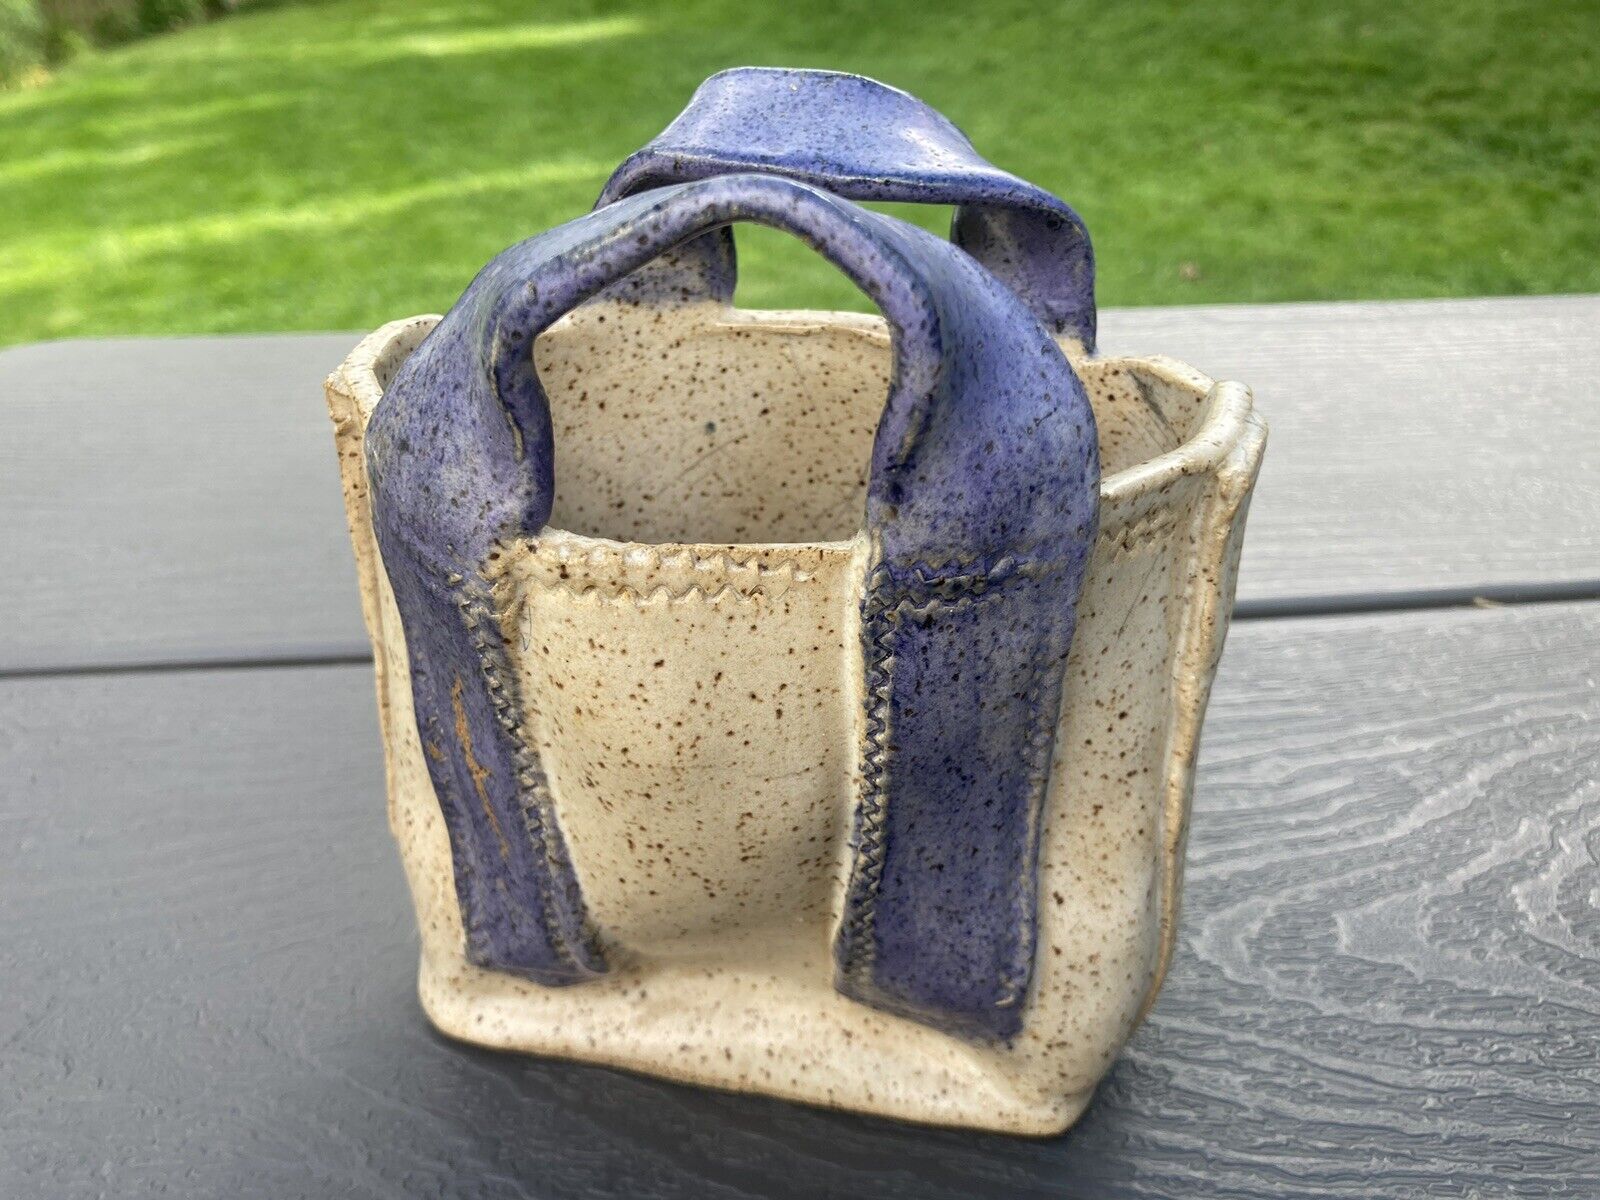 Ceramic Handbag Pottery Planter Original Figurine Hand Crafted 6” Fun Unique